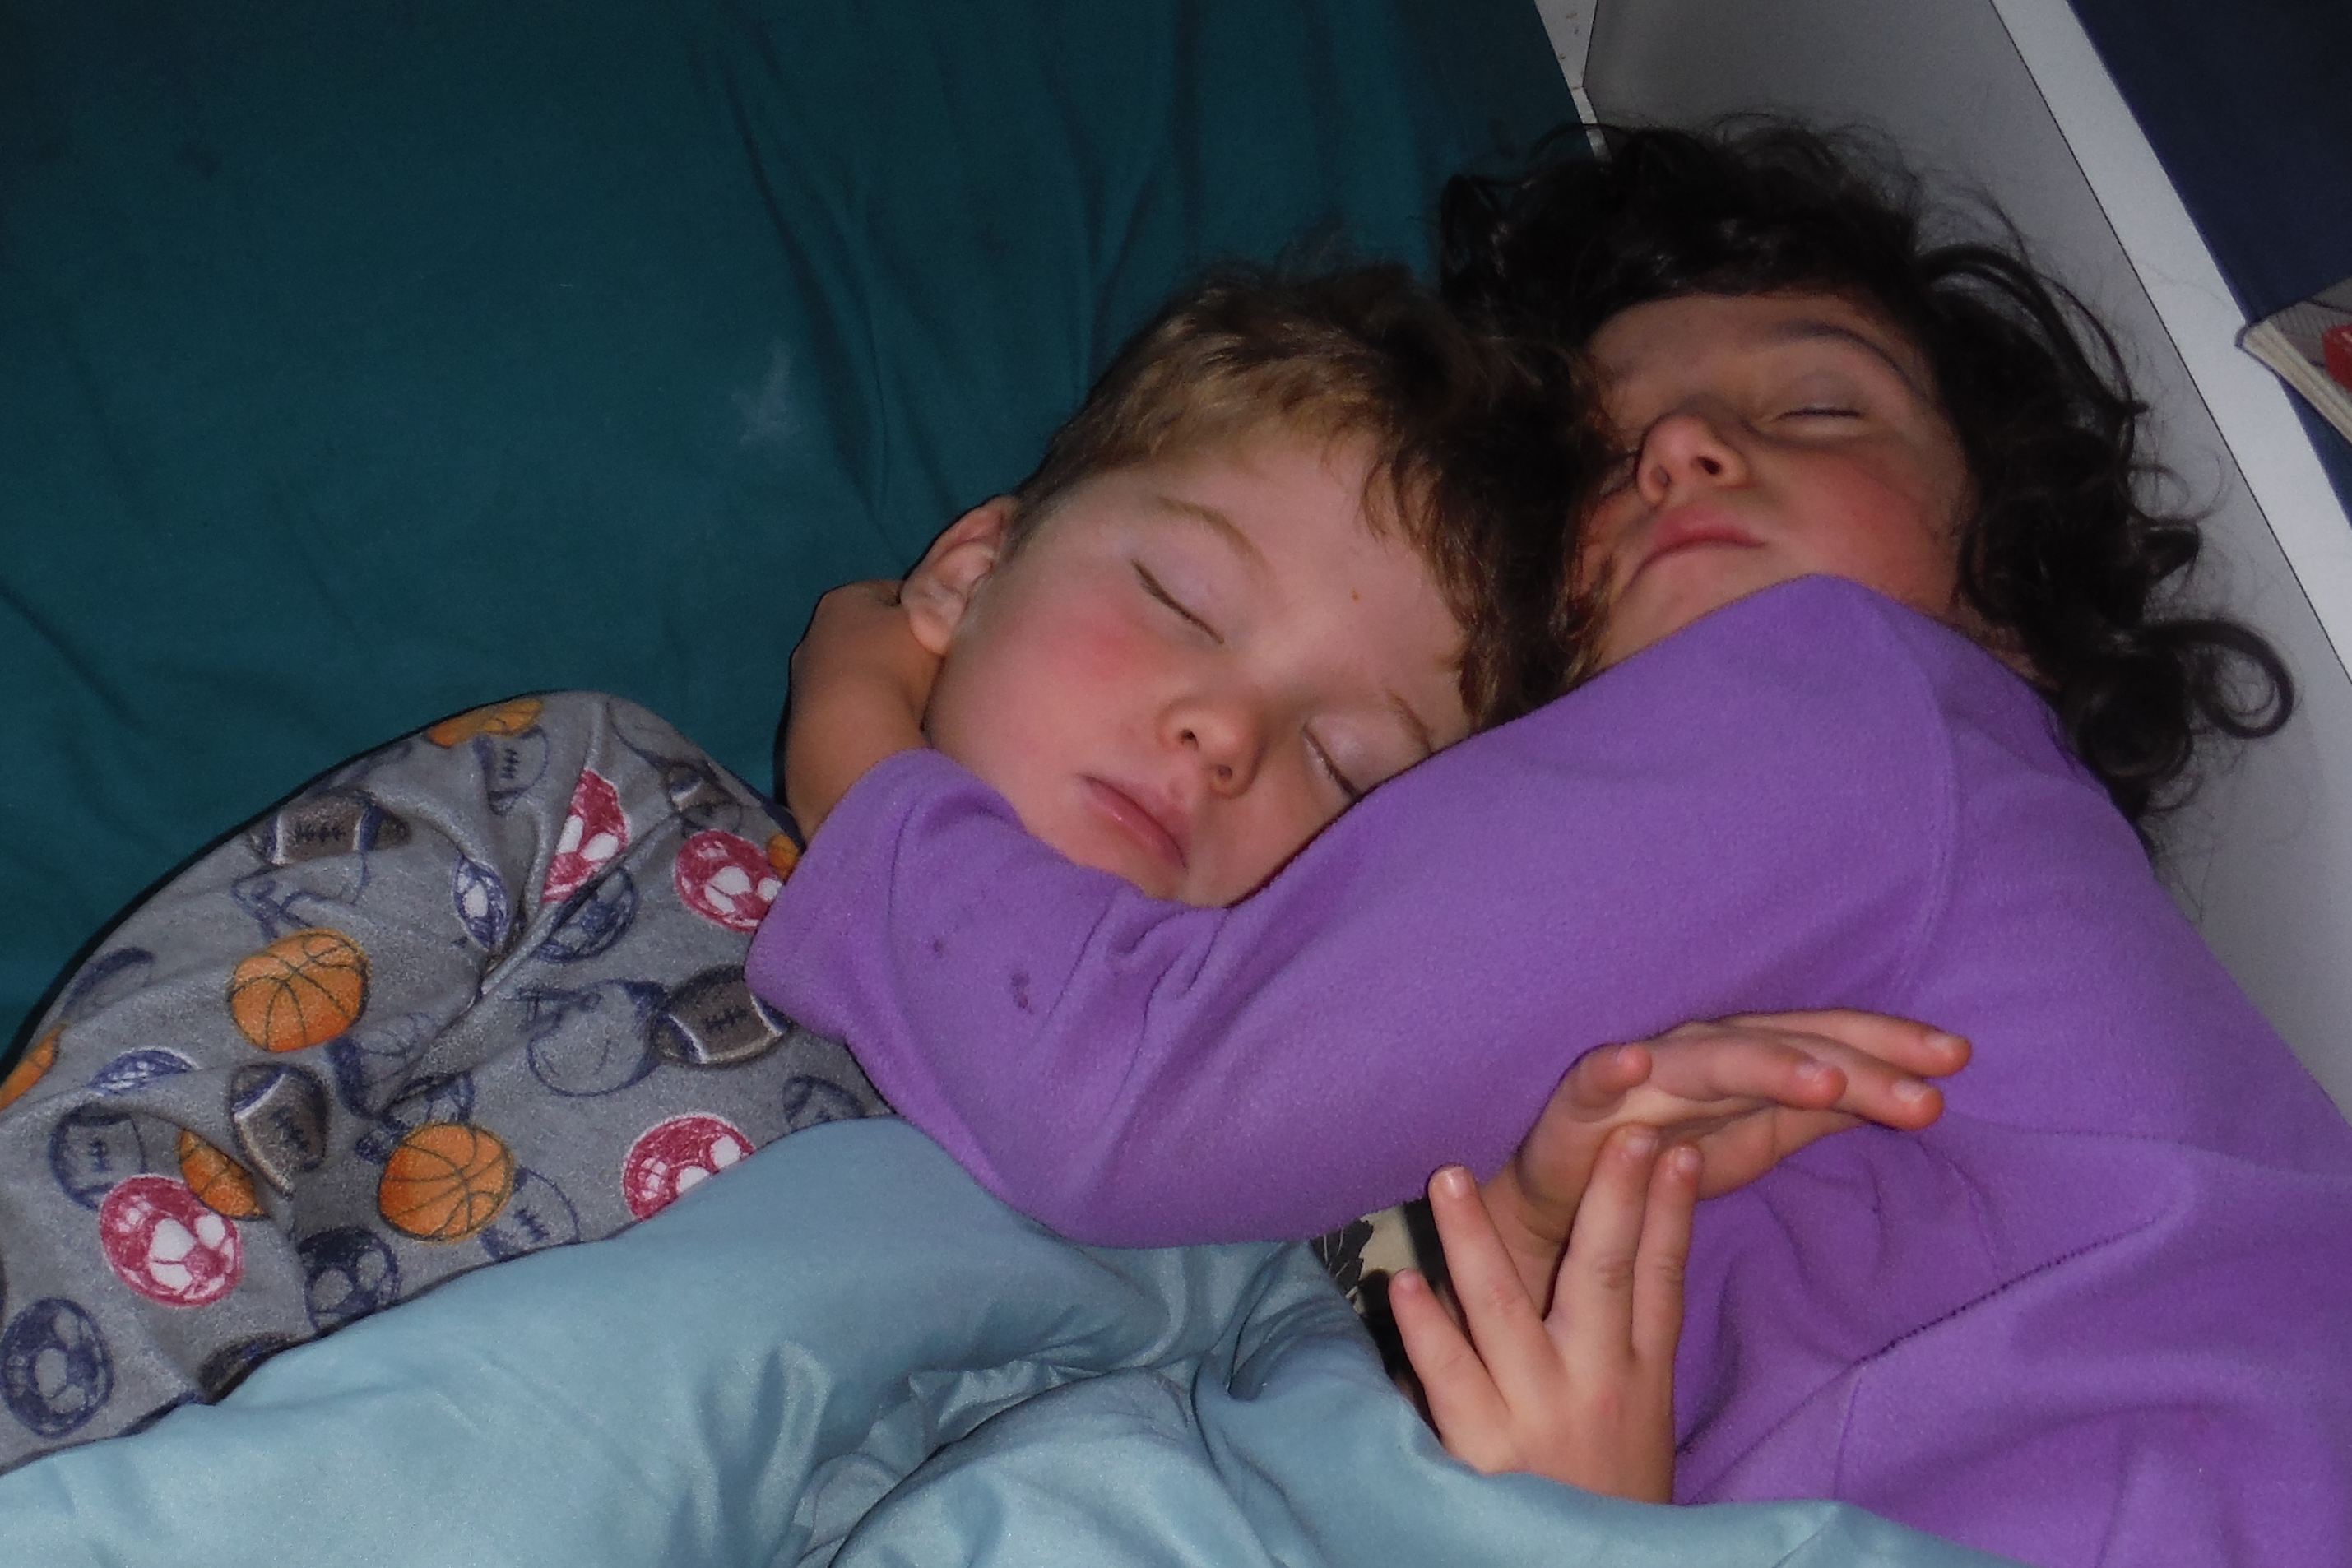 I brother sleep. Boys Sleep together. 2 Boys sleeping together. Boys Sleep together upside down. Old woman Sleep with boy.